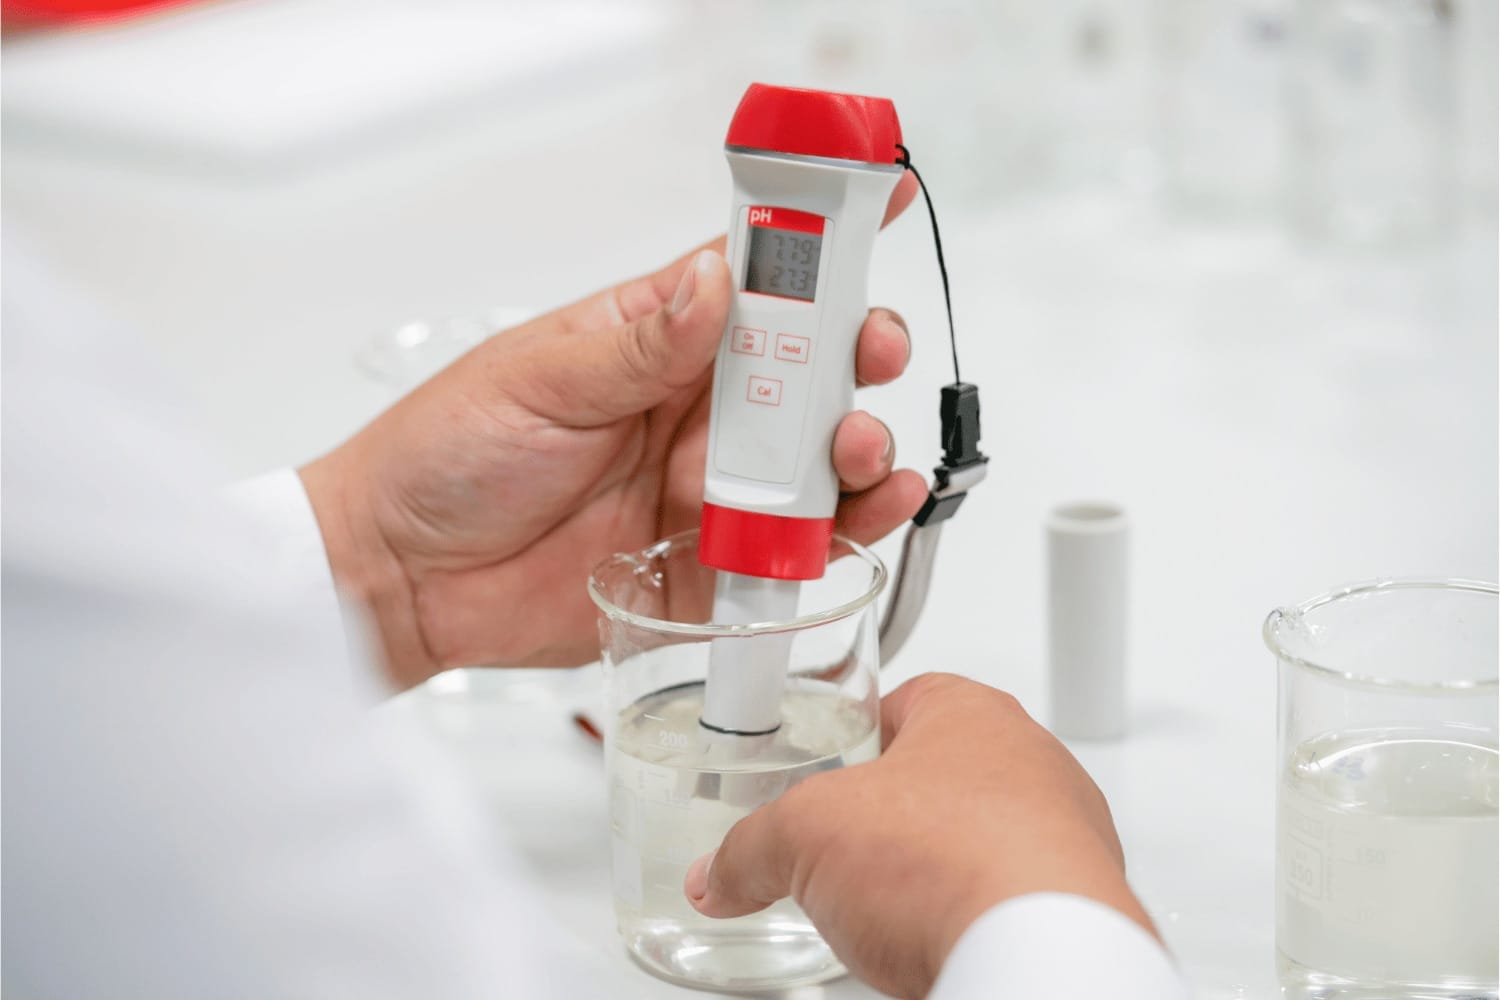 mesurer le pH d'un liquide à l'aide d'un pH mètre